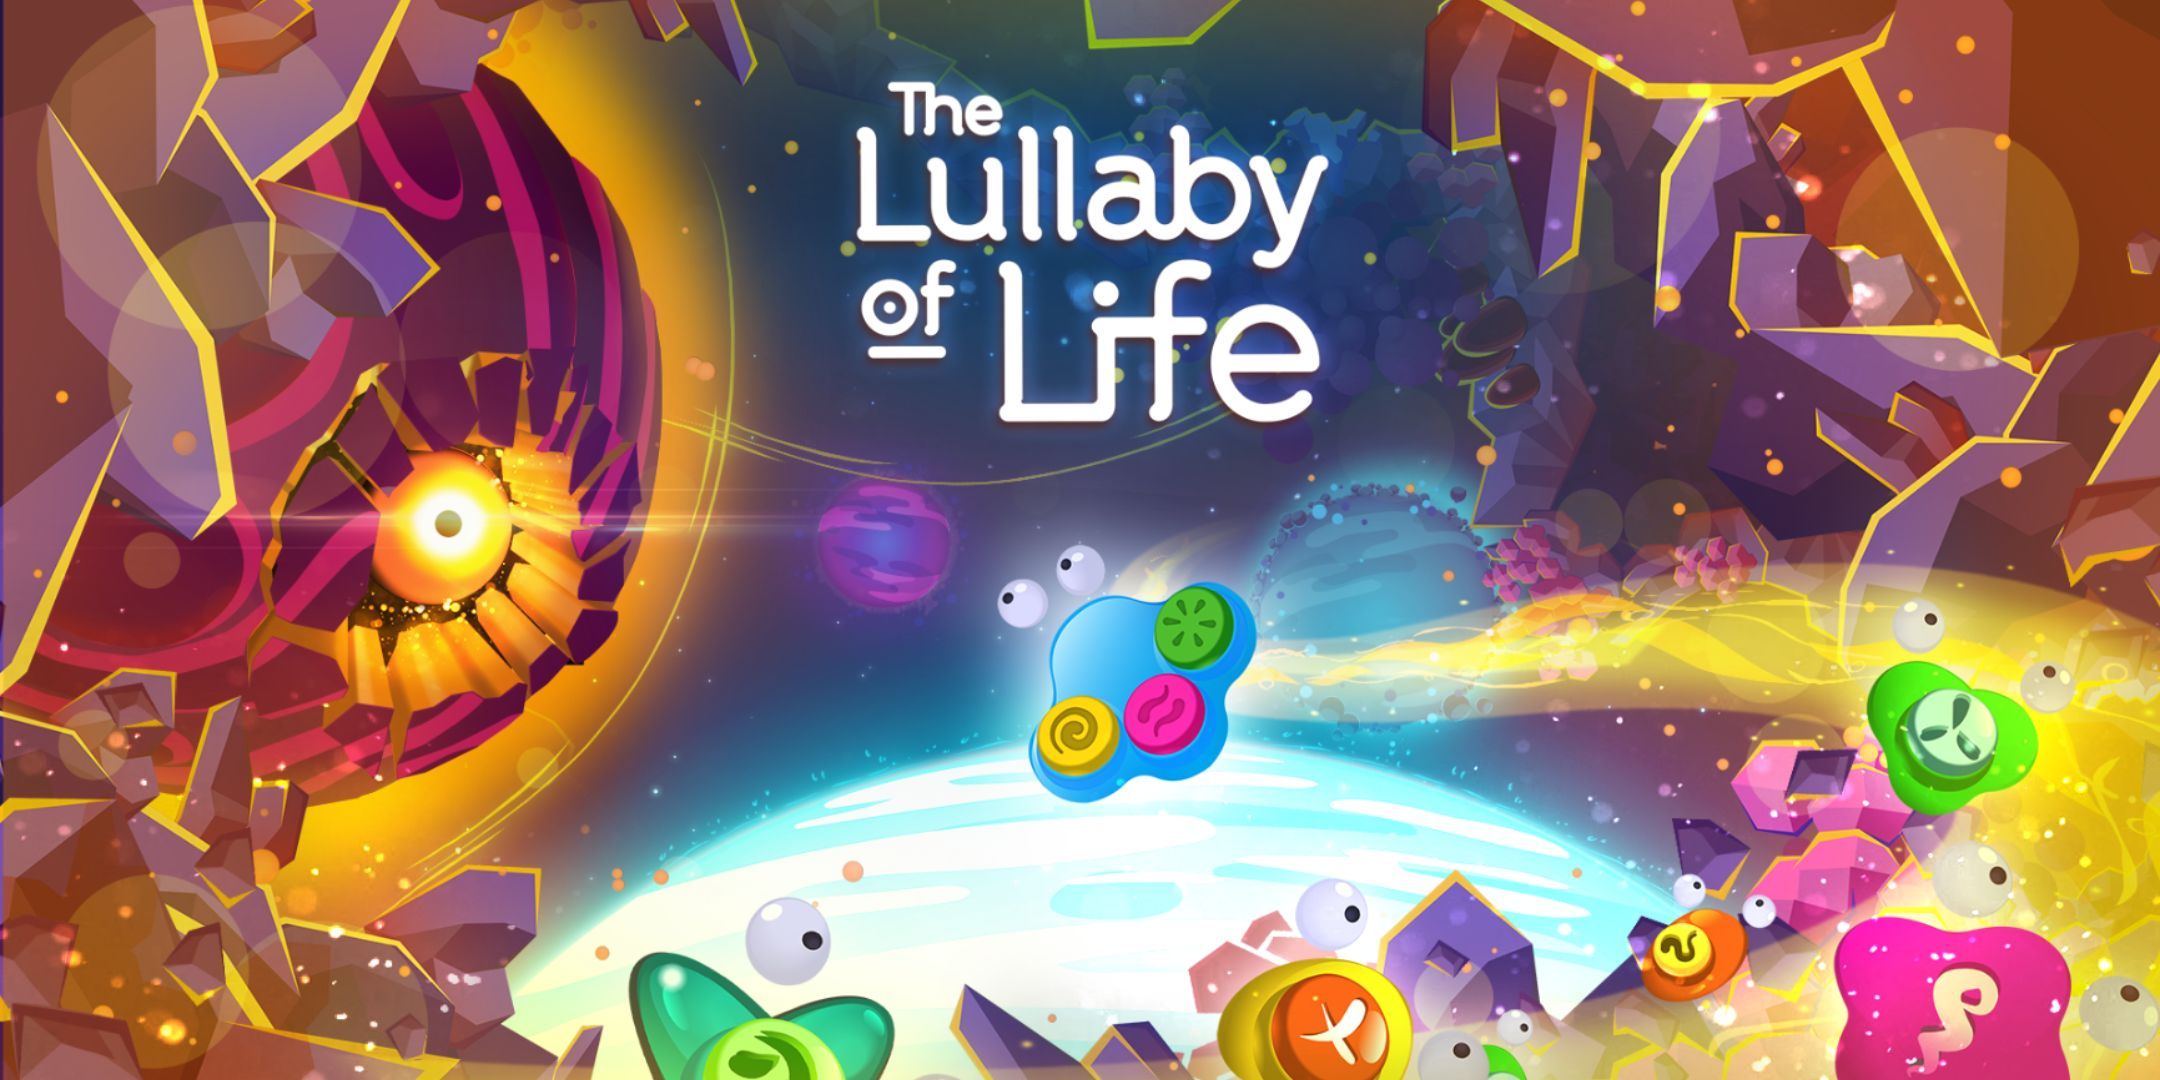 Arte clave de Lullaby of Life con logotipo y título del juego.